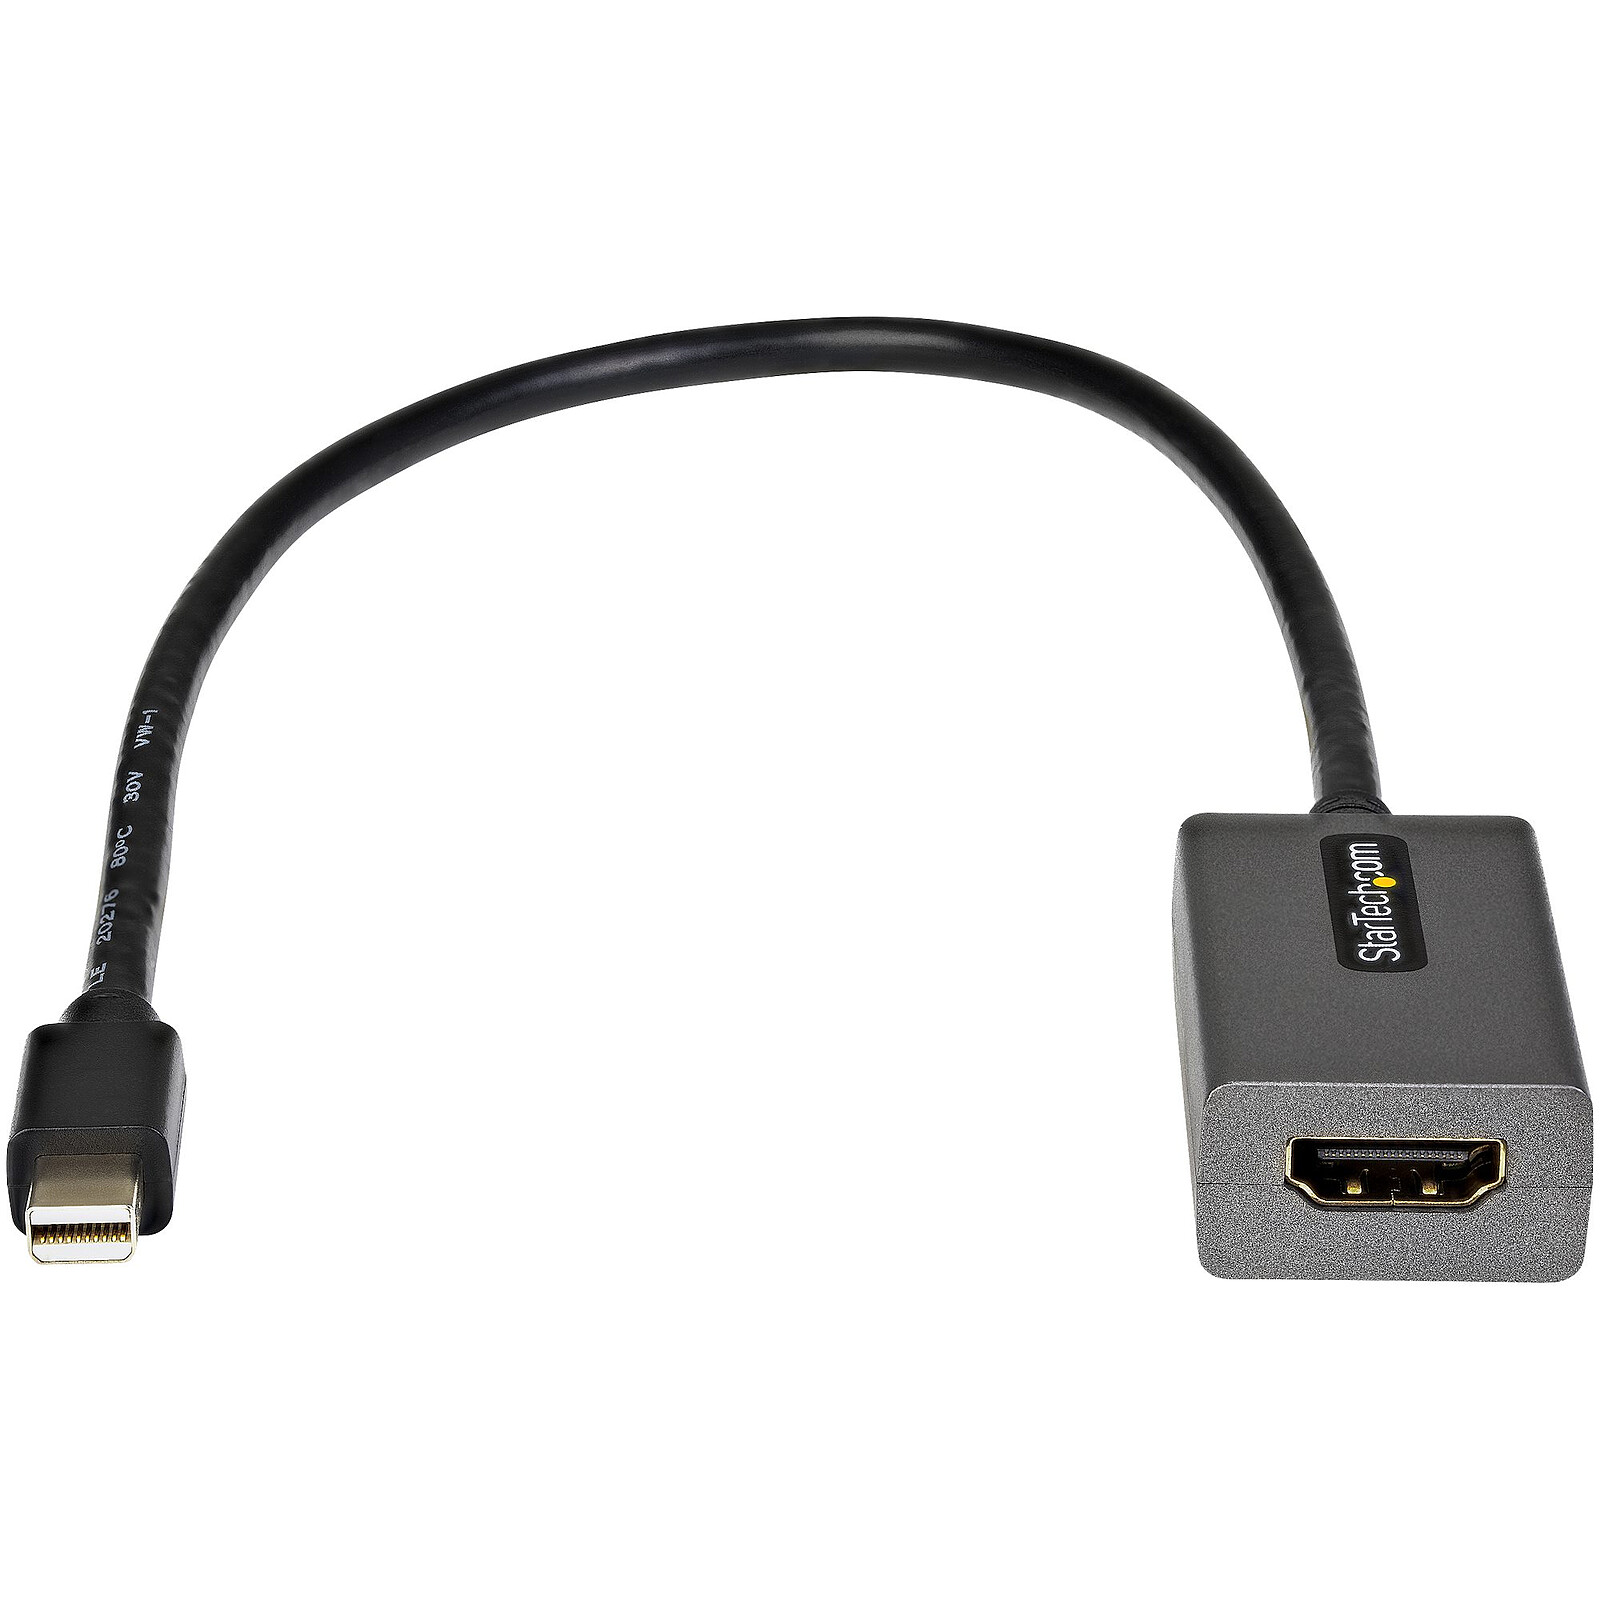 StarTech.com Câble adaptateur Mini DisplayPort vers HDMI de 2 m - M/M - 4K  - Noir sur